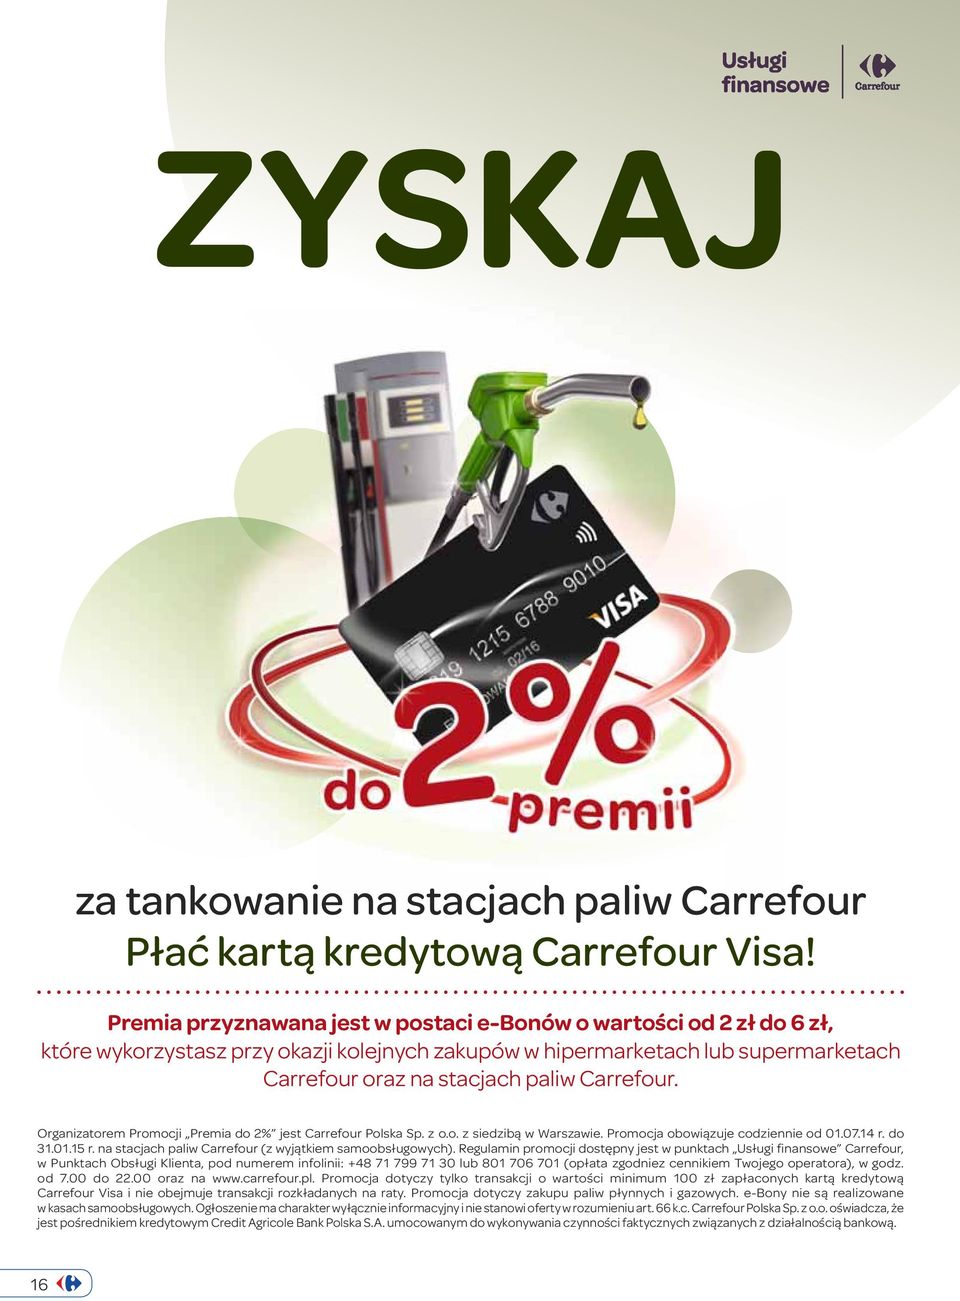 Organizatorem Promocji Premia do 2% jest Polska Sp. z o.o. z siedzibą w Warszawie. Promocja obowiązuje codziennie od 01.07.14 r. do 31.01.15 r. na stacjach paliw (z wyjątkiem samoobsługowych).